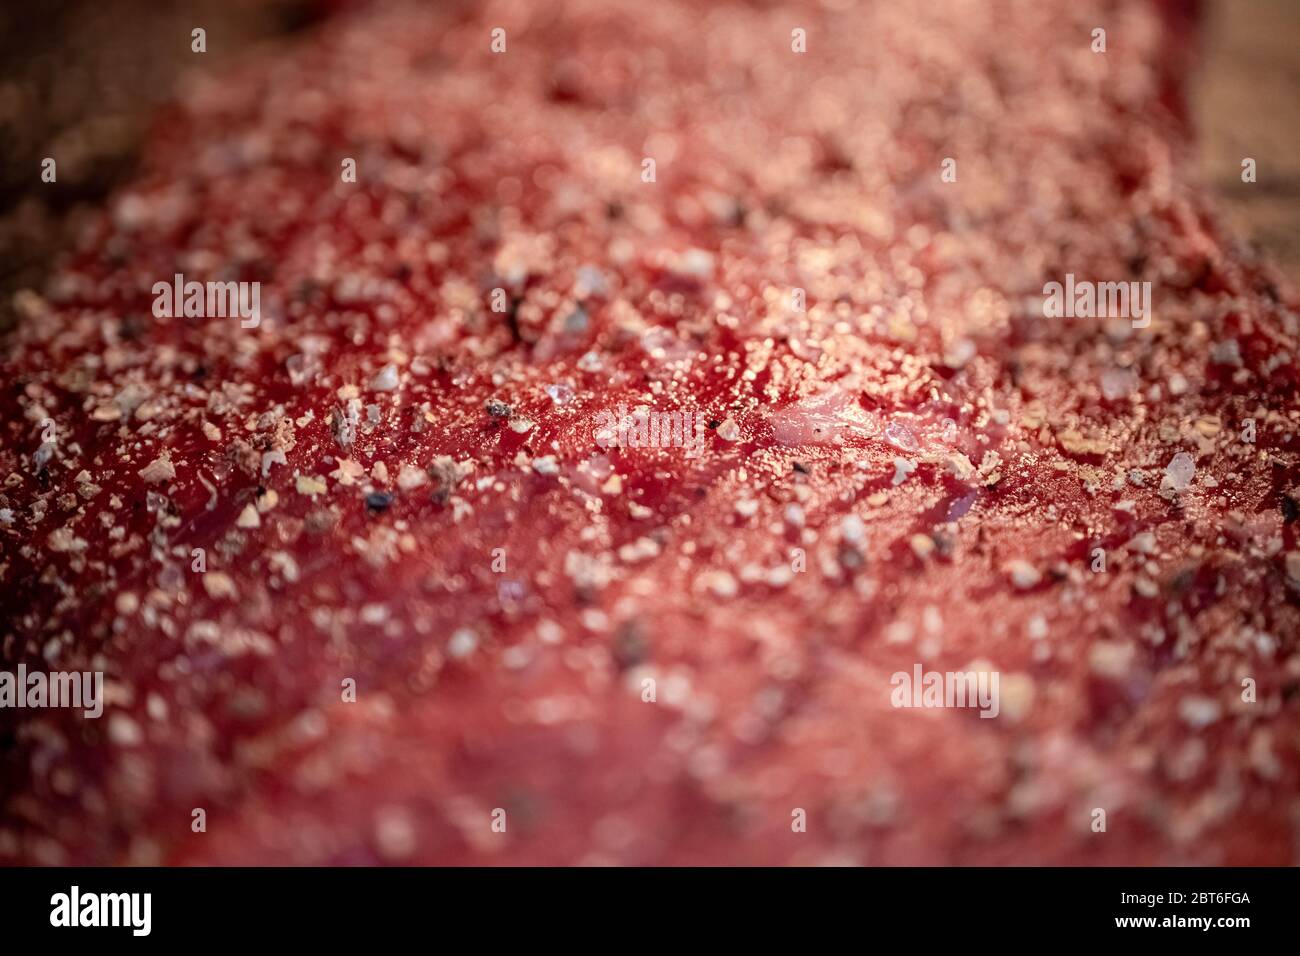 Pfeffer und Gewürze auf dem rohen Fleischsteak aus nächster Nähe mischen Stockfoto